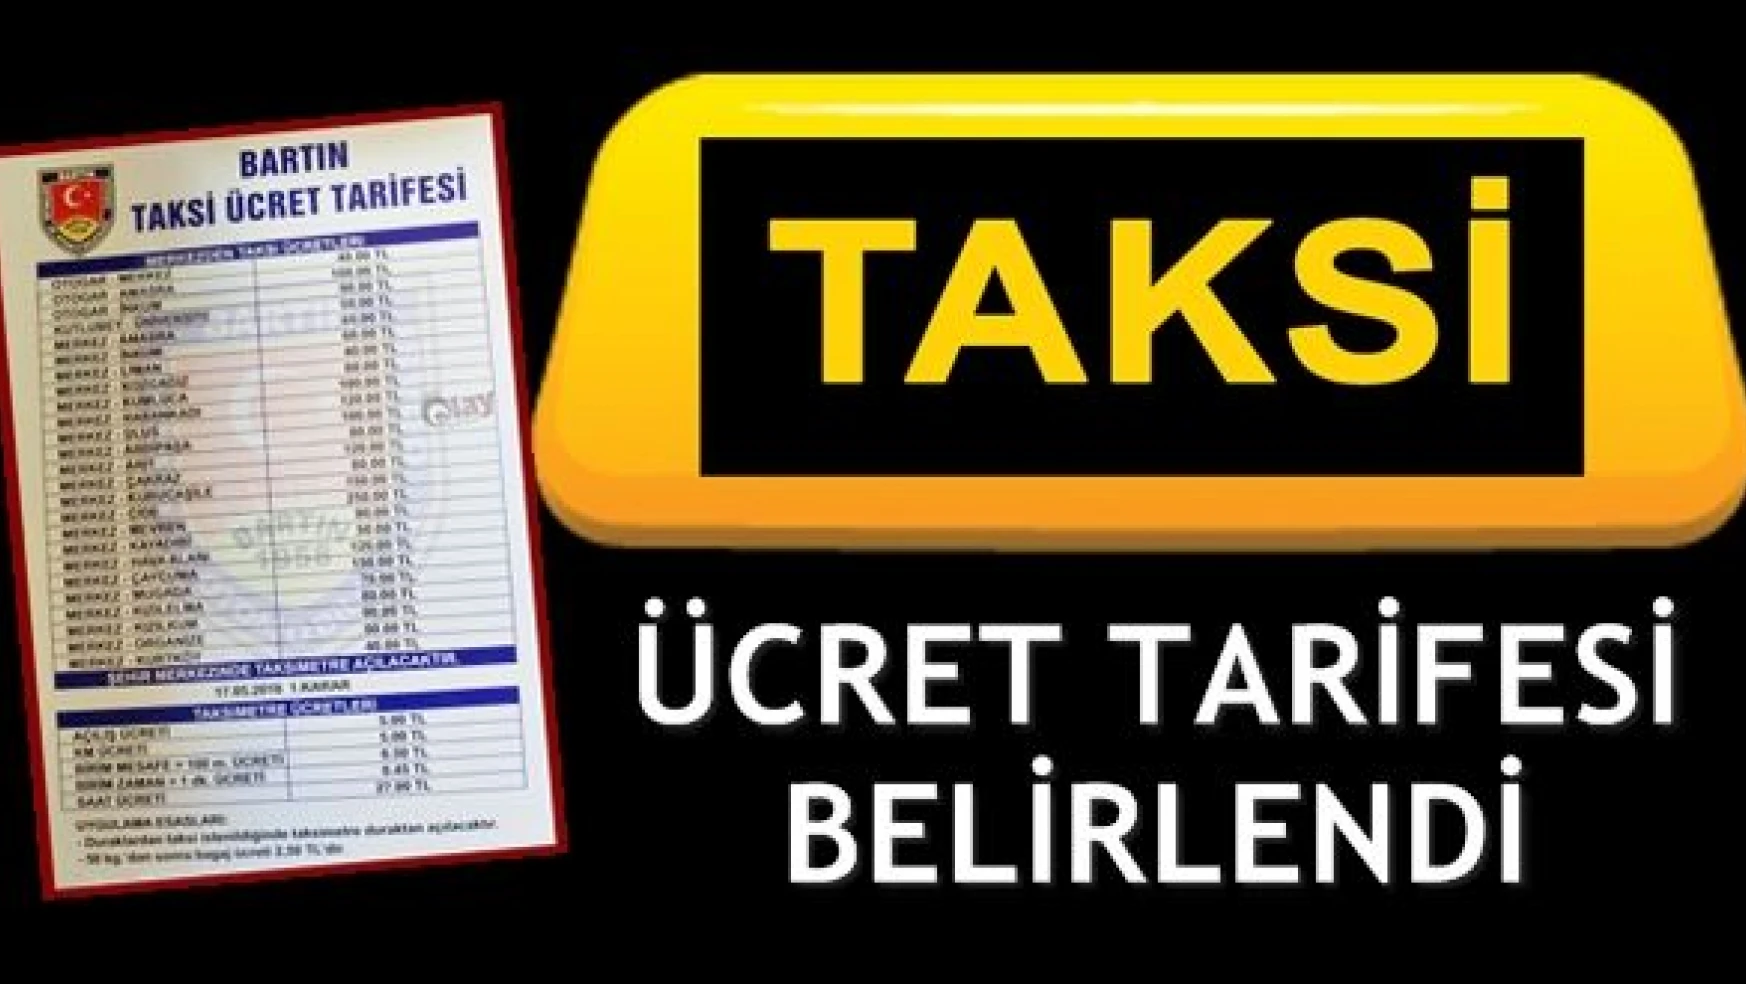 Bartın'da taksi ücret tarifesi belirlendi